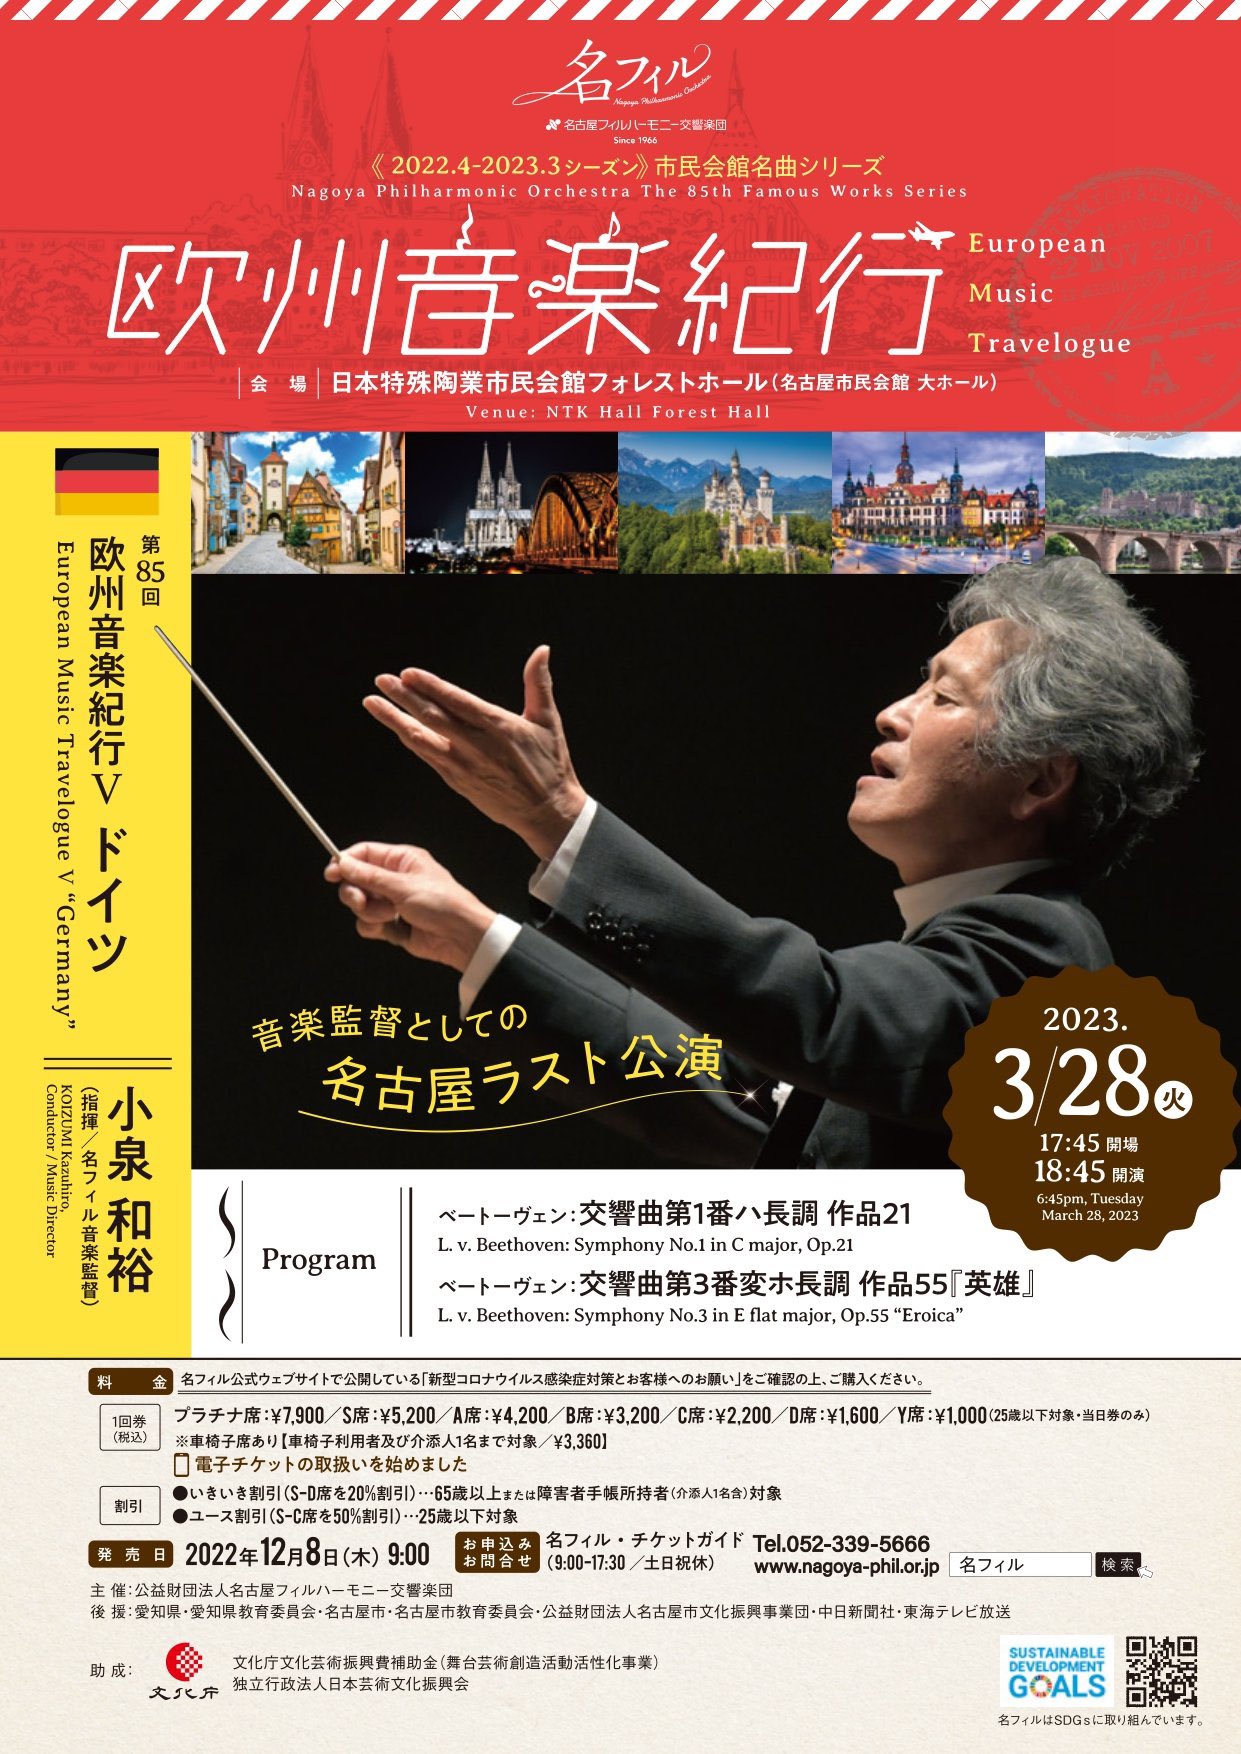 名古屋フィルハーモニー交響楽団 第85回市民会館名曲シリーズ〈欧州音楽紀行Ⅴ ドイツ〉